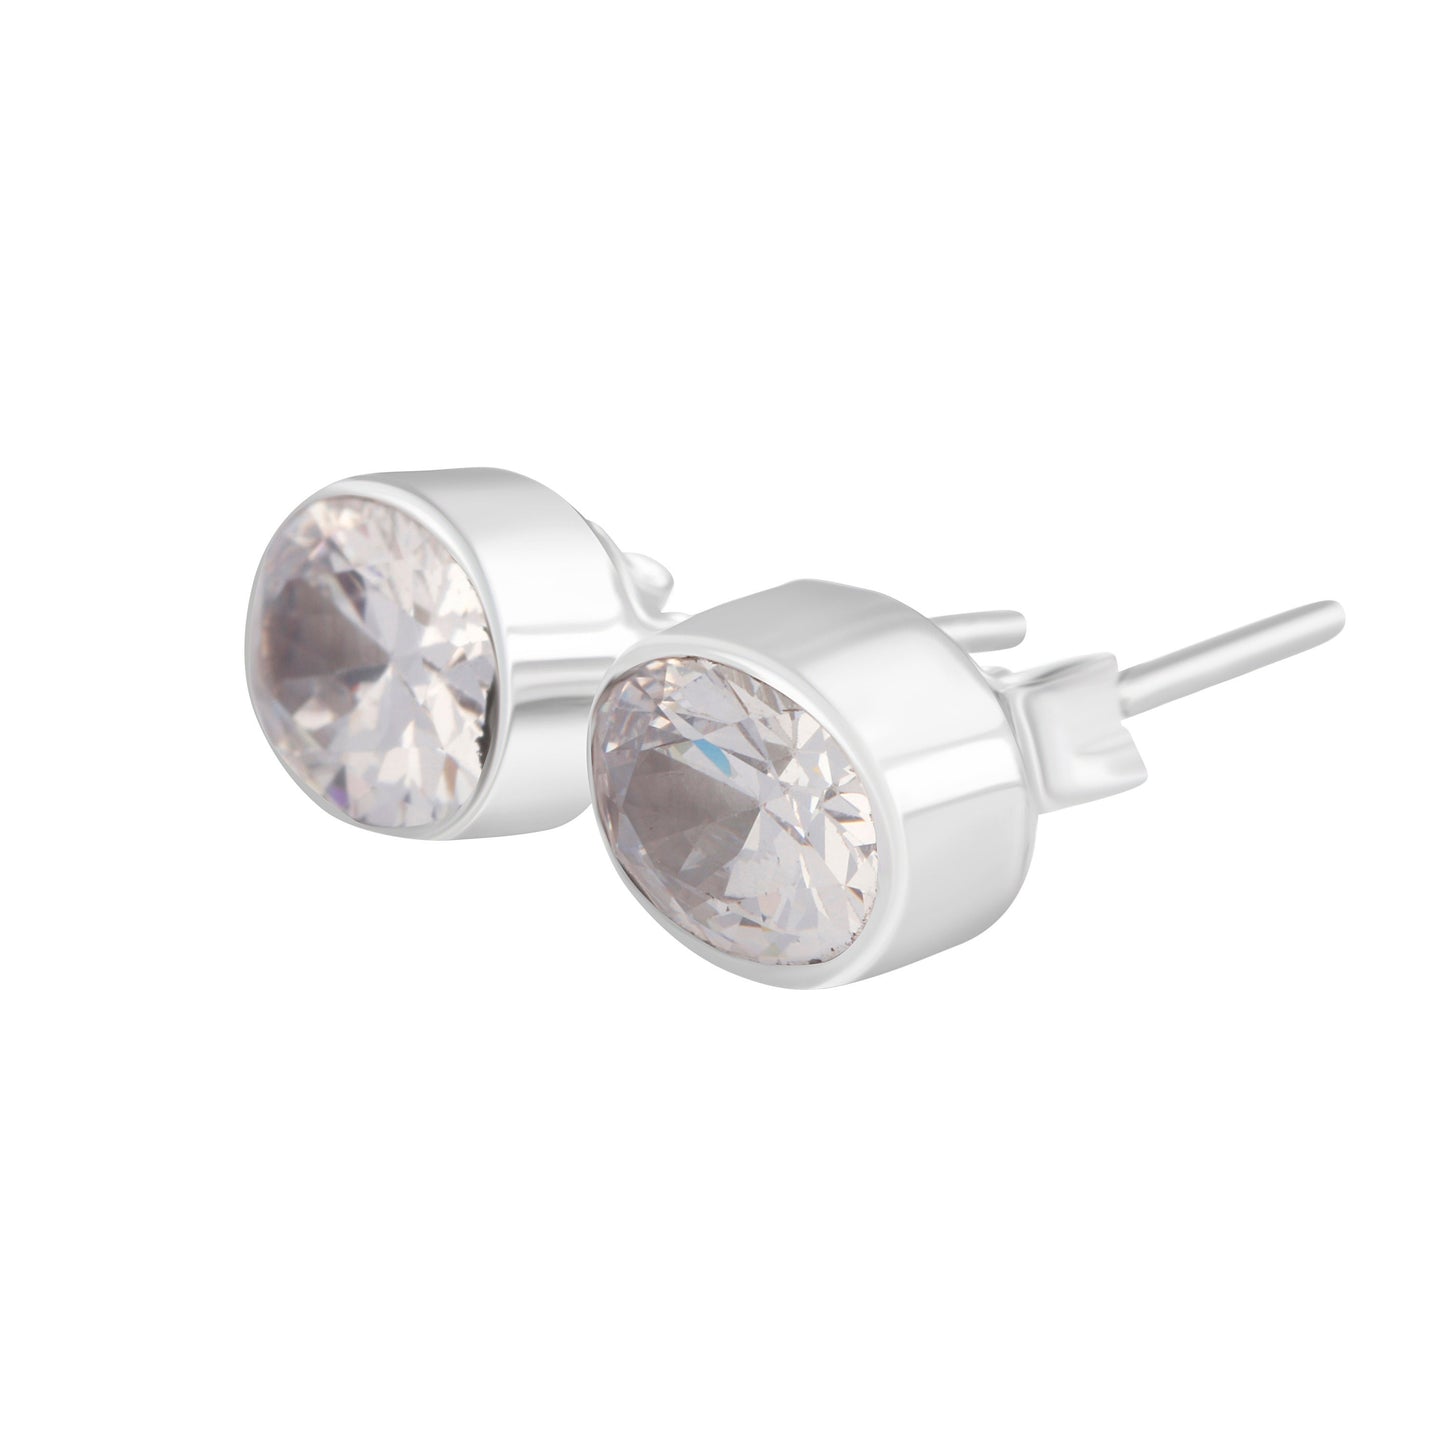 Sparkling Cubic Zirconia Sterling Silver Minimalist Style Oval Stud Earrings, SOLID 925 Silver CZ Earrings, Women/Men Earrings, Australia, Zorbajewellers